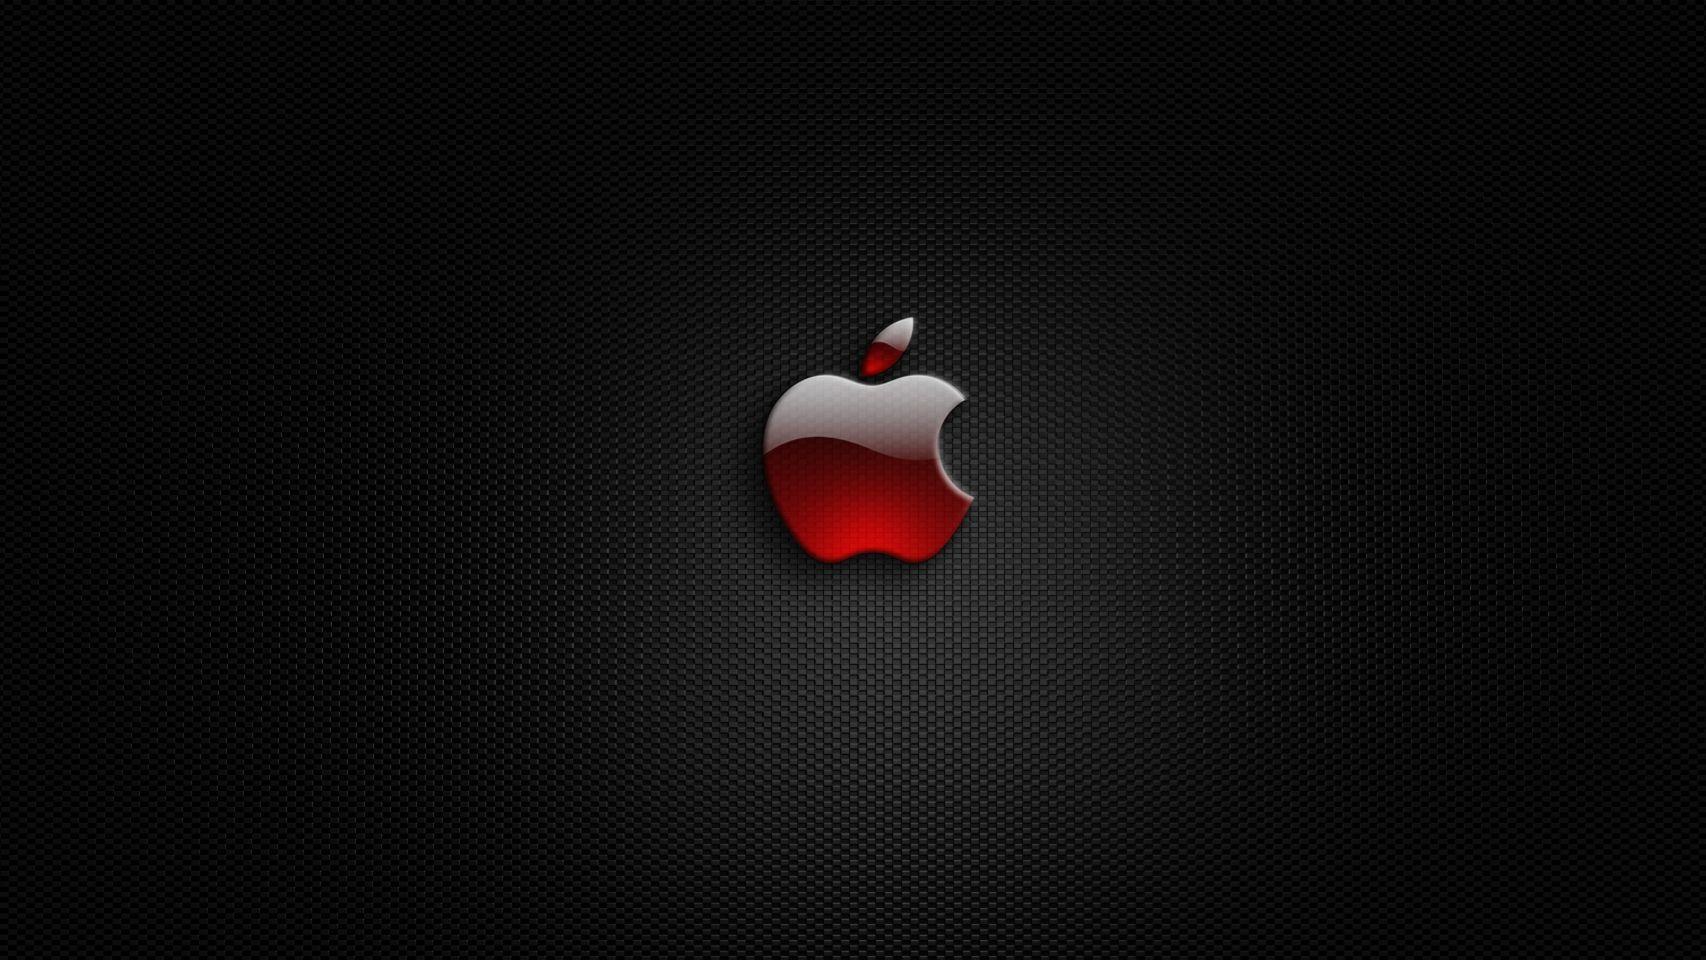 Apple Logo Hd Wallpapers